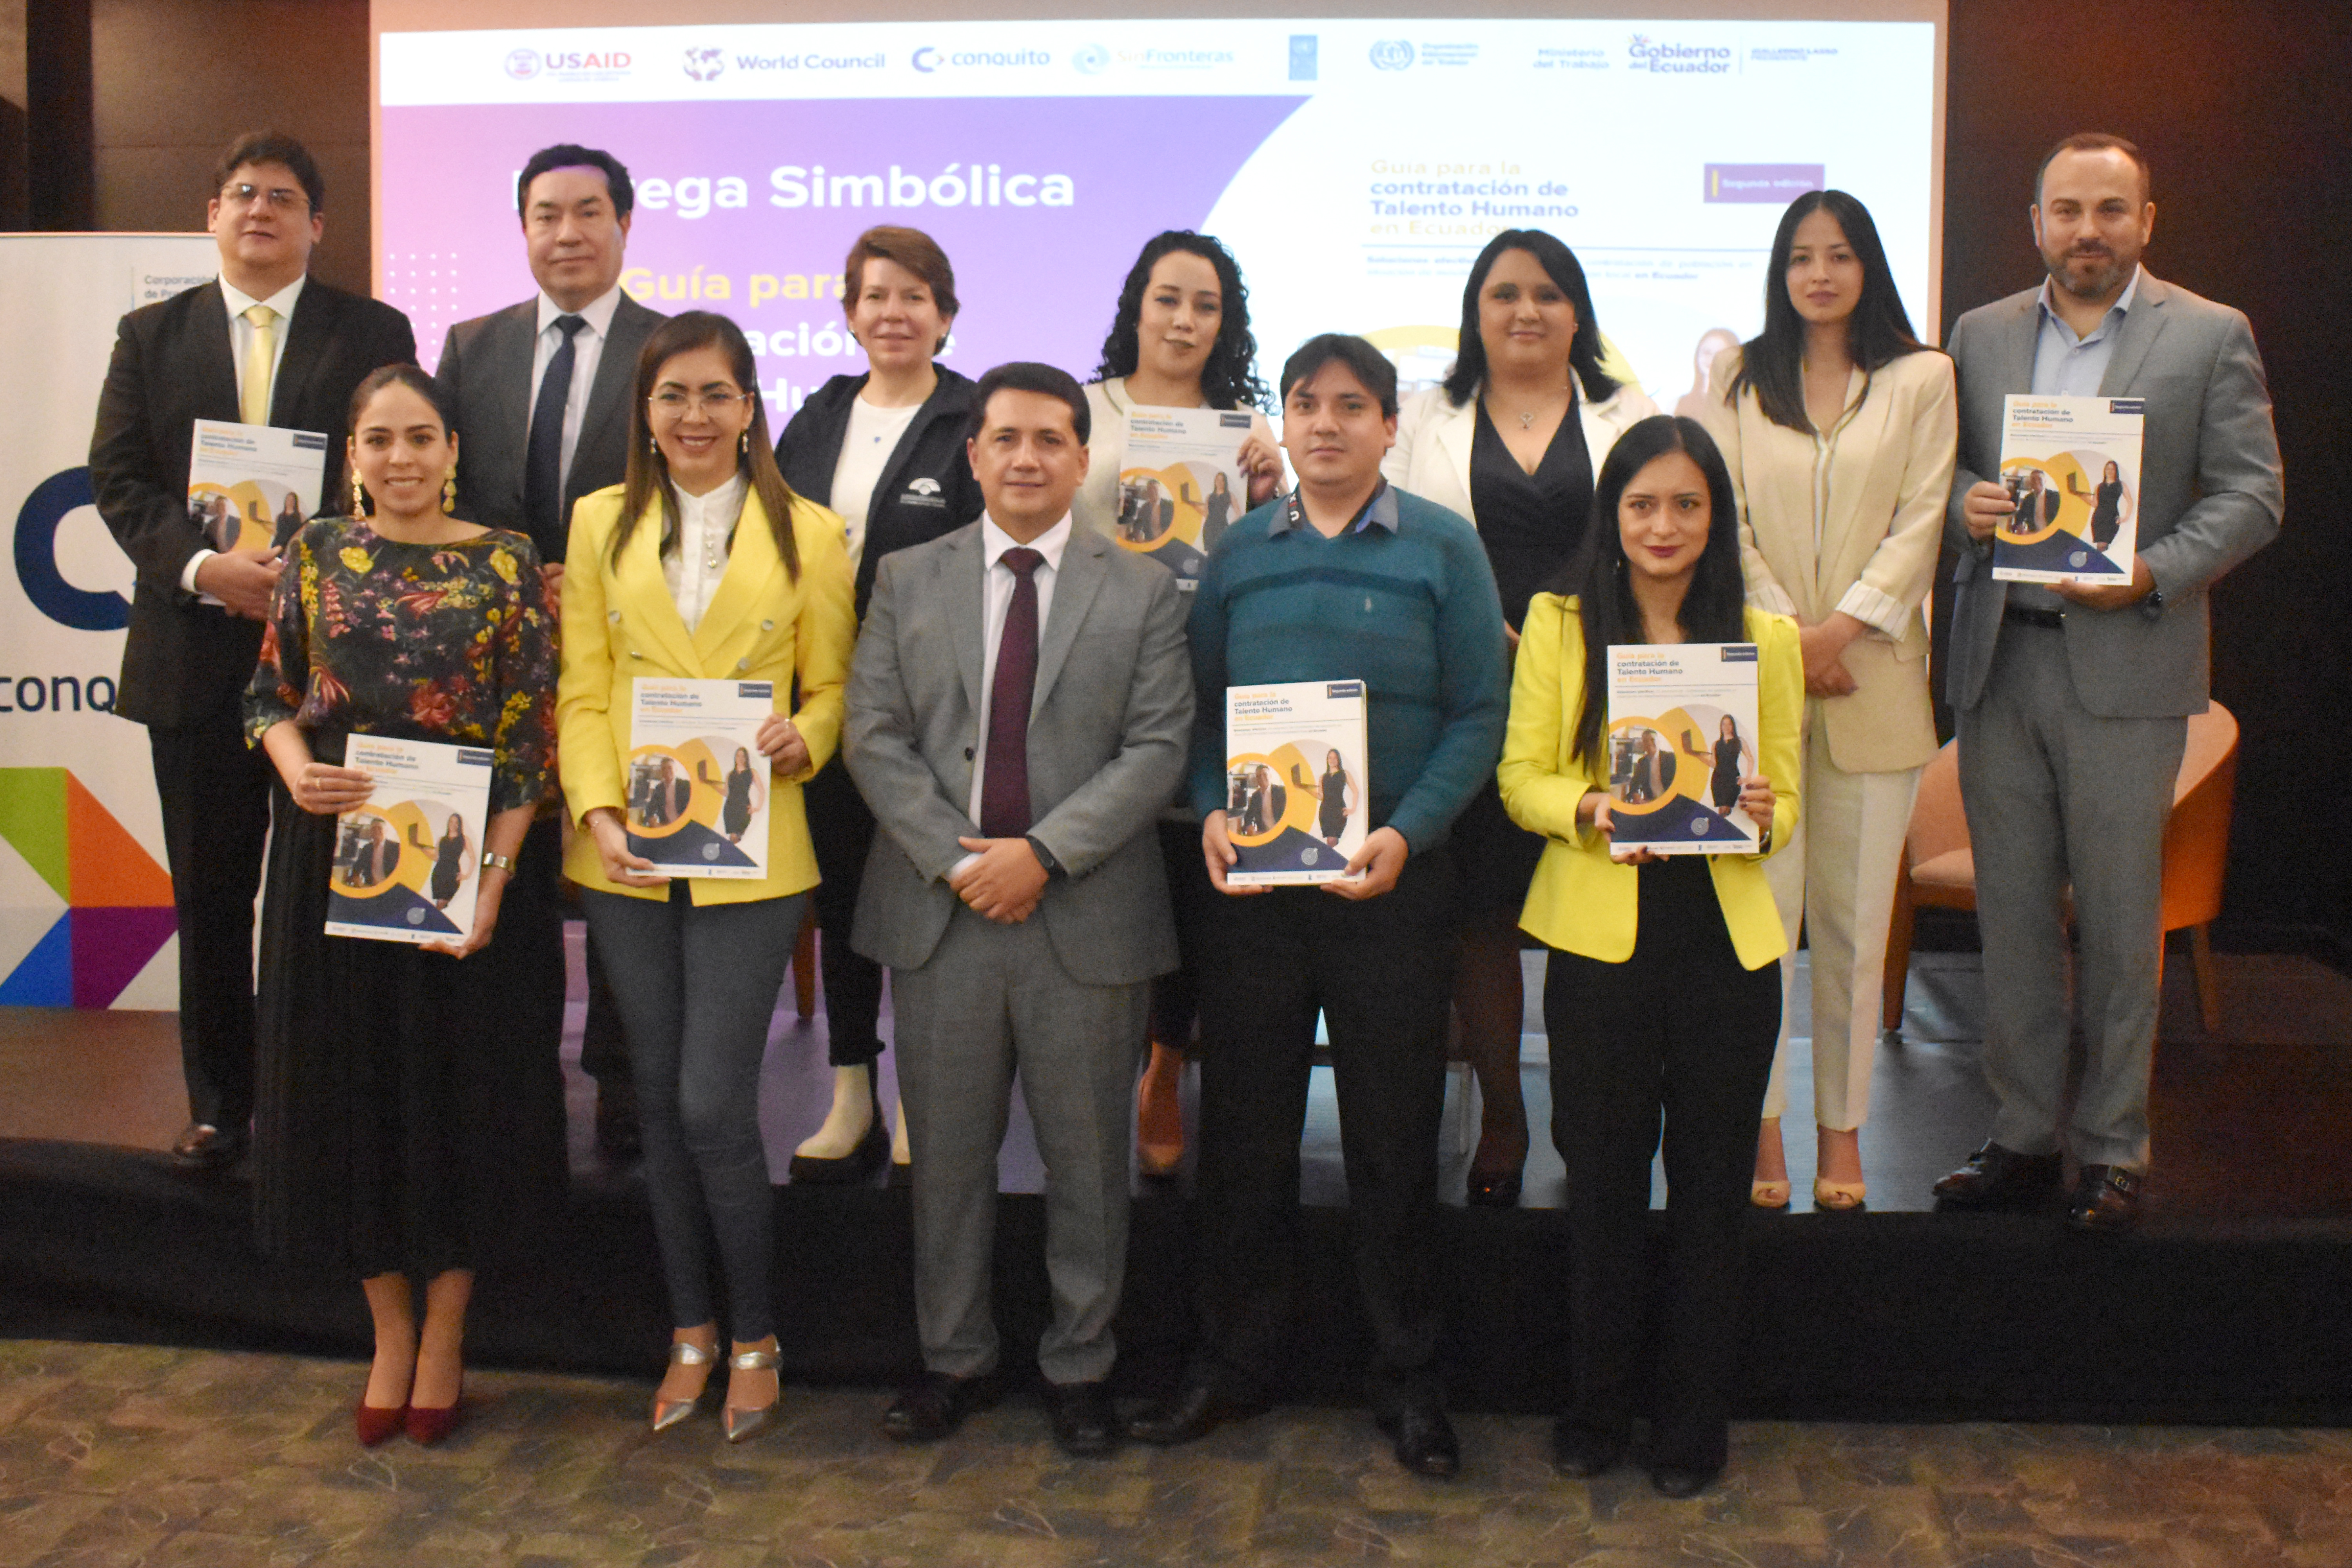  Guía para la contratación de talento humano en Ecuador